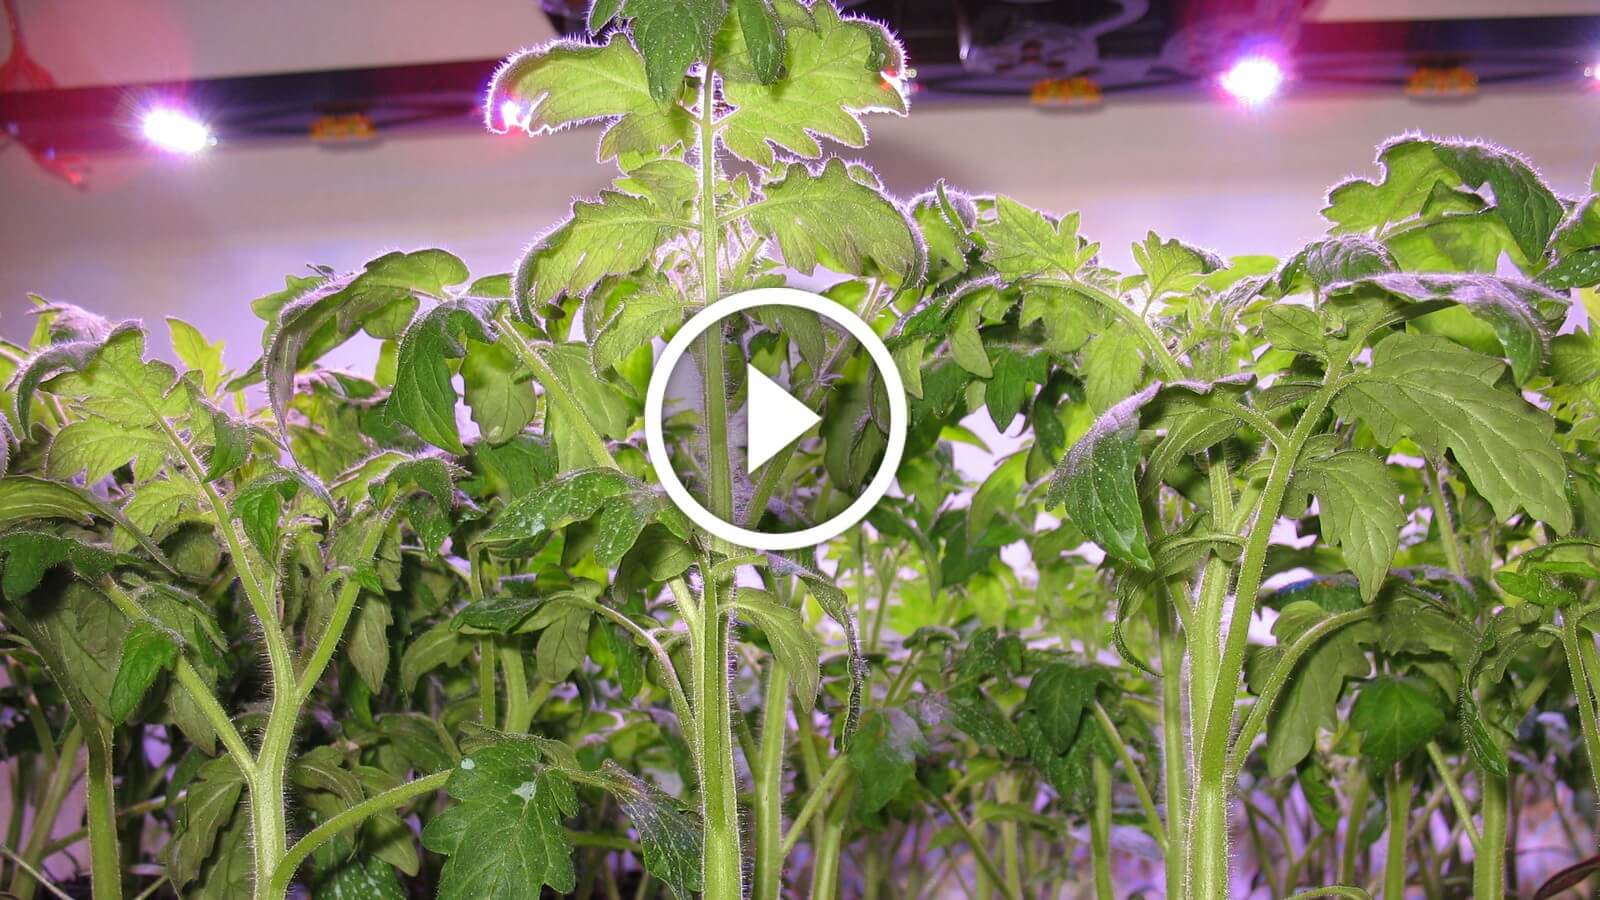 فيديو .. زراعة الطماطم فى الاراضى الصحراوية مكافحة النيماتودا واعفان الجذور وزيادة النمو الخضري